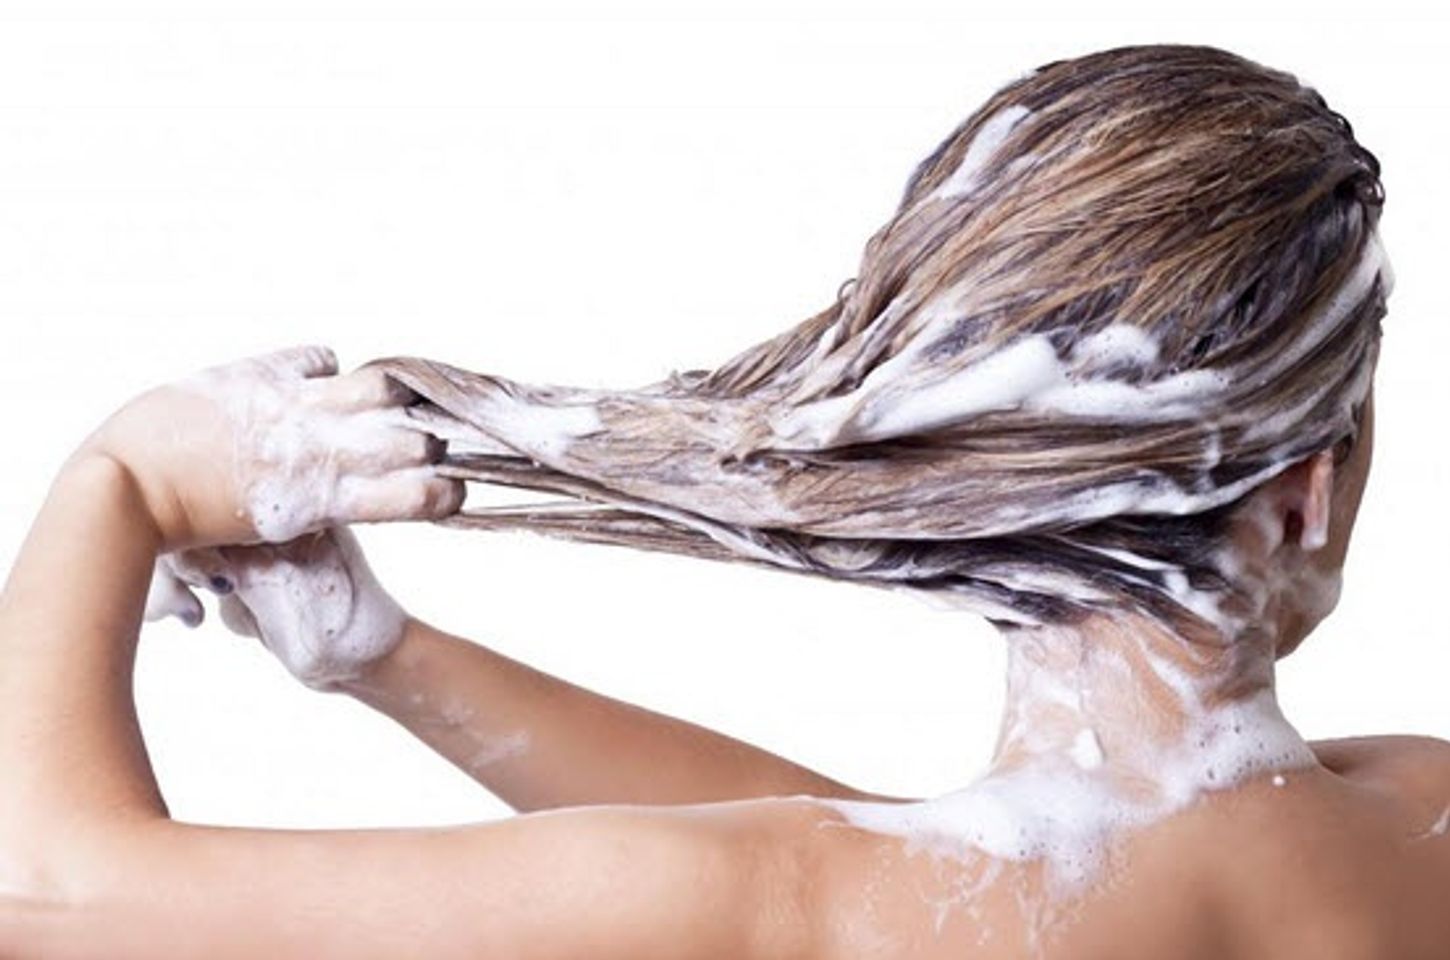 Sử dụng thường xuyên để đạt hiệu quả chăm sóc tóc tốt hơn mỗi ngày